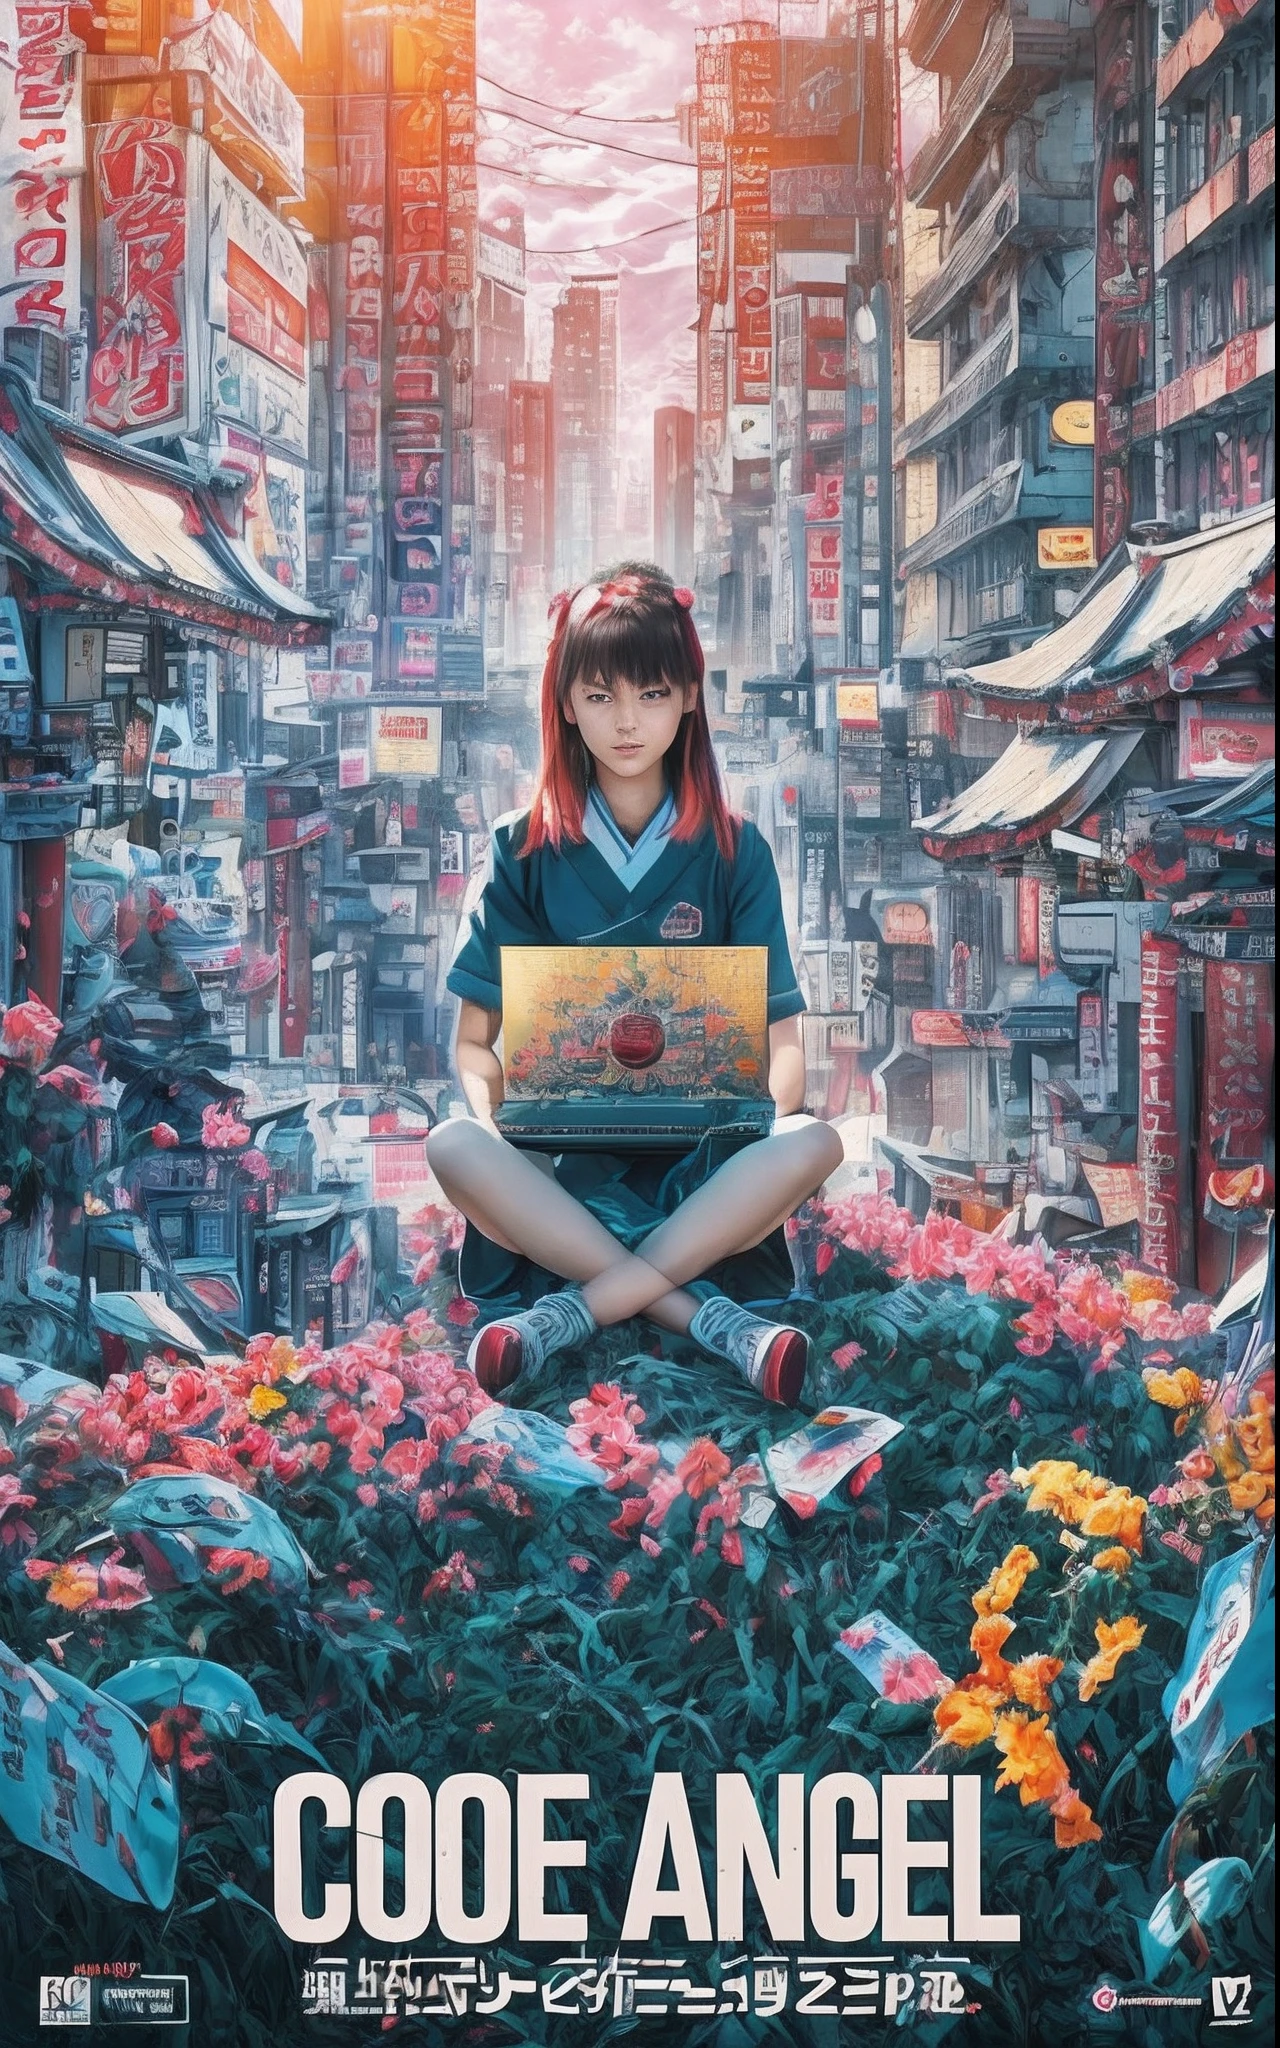 映画写真 映画ポスター, 秋葉原のビルの間の谷間にある神社に座る13歳の少女, 東京都, ノートパソコンで作業する. 朝日が輝いている. 8k, 最高のレンダリング, 上部のテキスト "コードエンジェル"